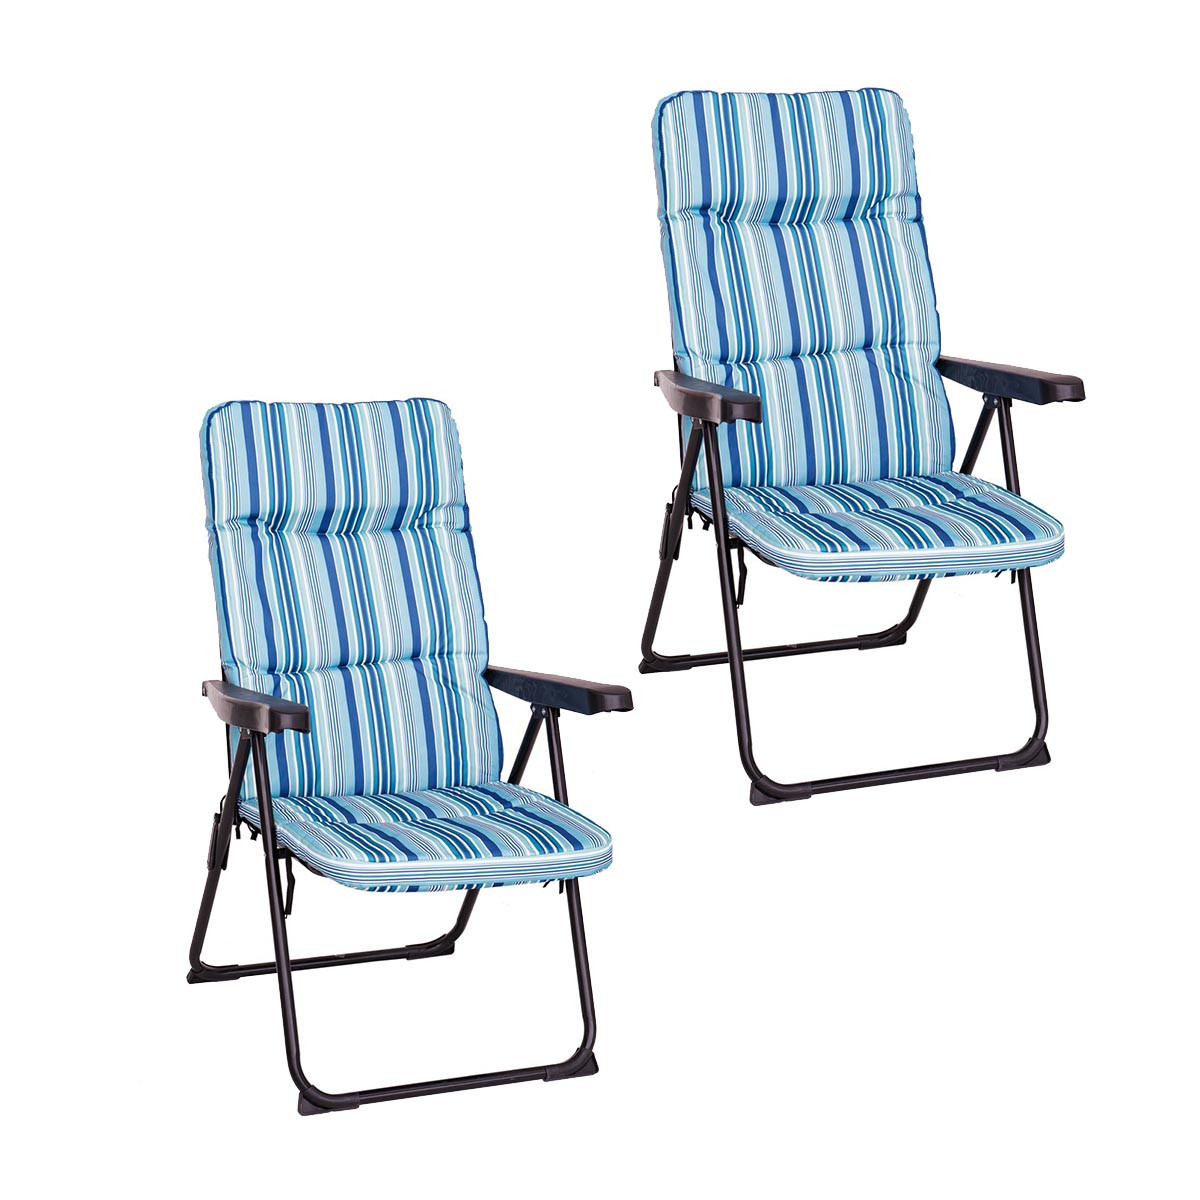 con reposapiés, Beige LOLAhome Pack de 2 sillones de Playa Acolchados de 4 Posiciones Multicolor de Acero y Lona de 62x59x108 cm 